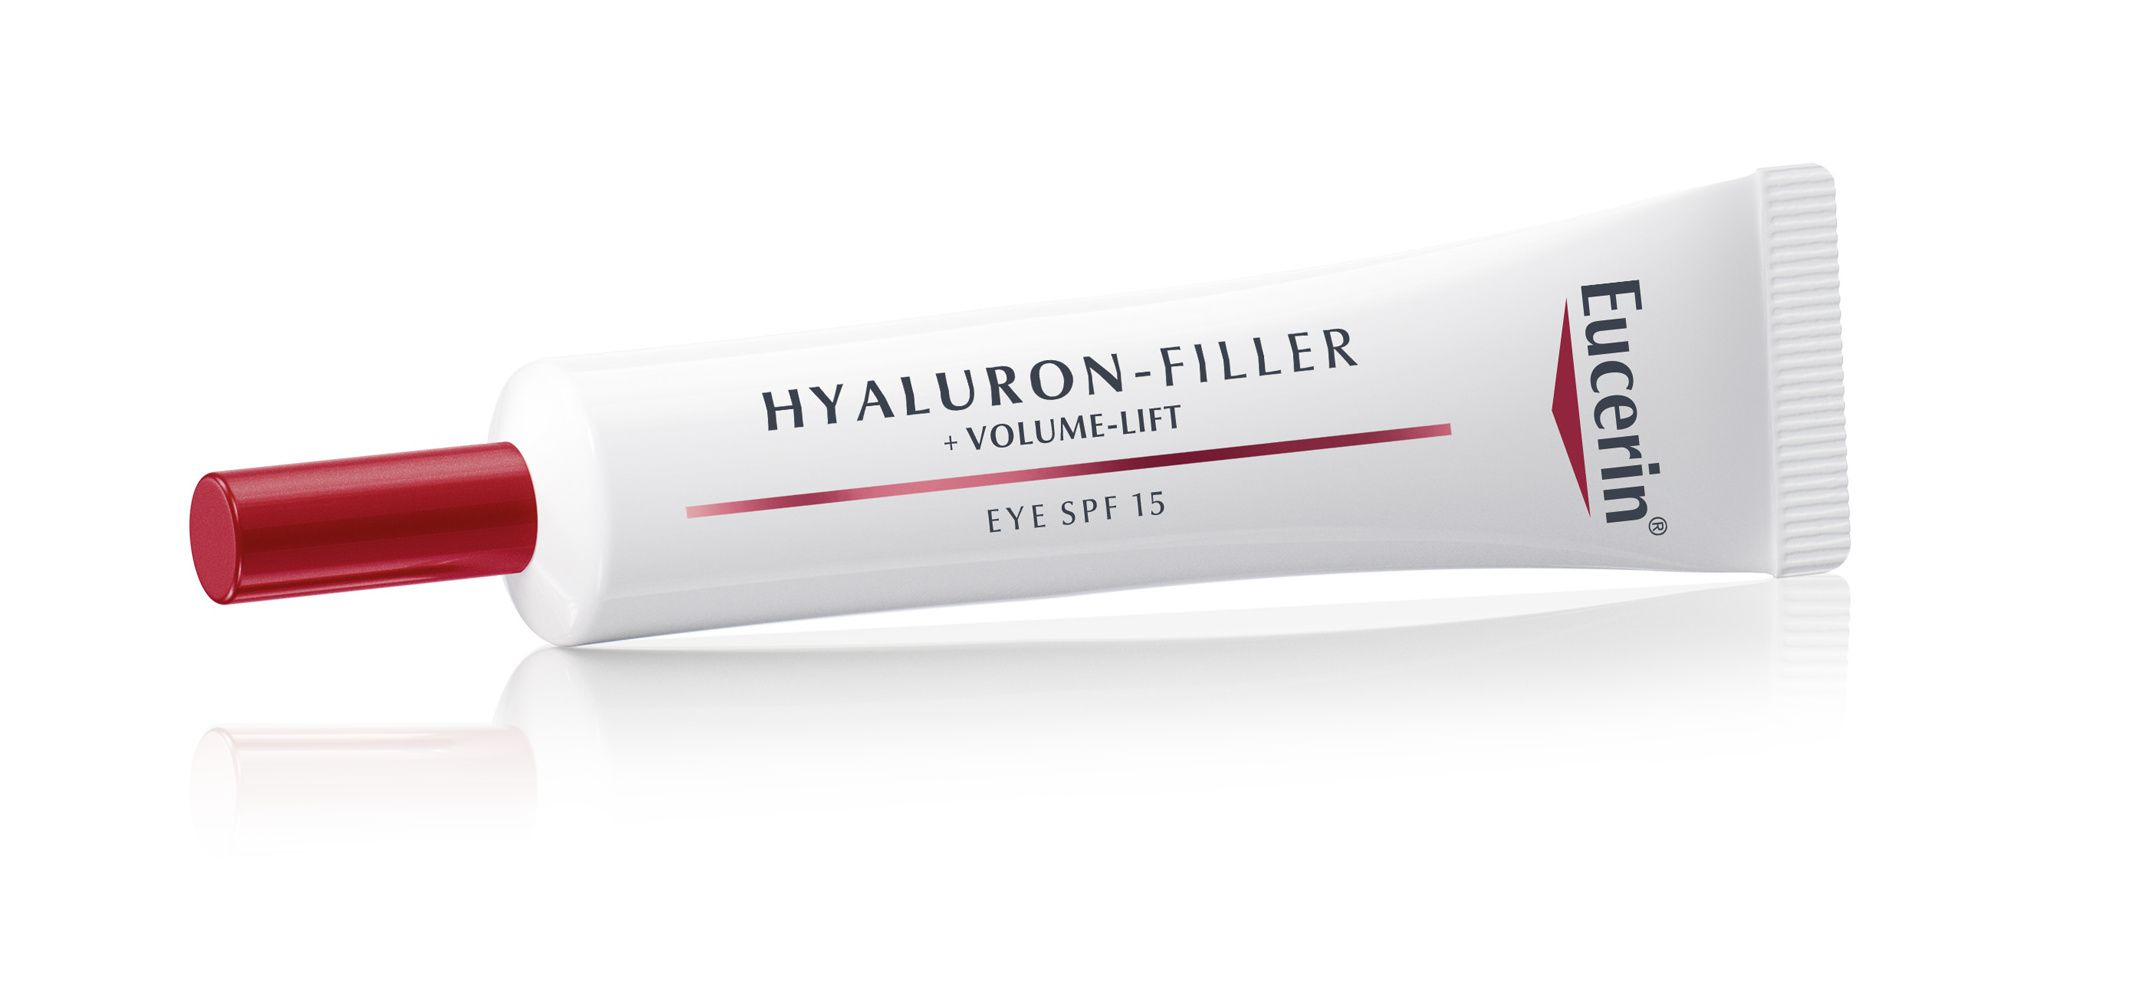 Eucerin Hyaluron-Filler + Volume-Lift oční krém 15 ml Eucerin